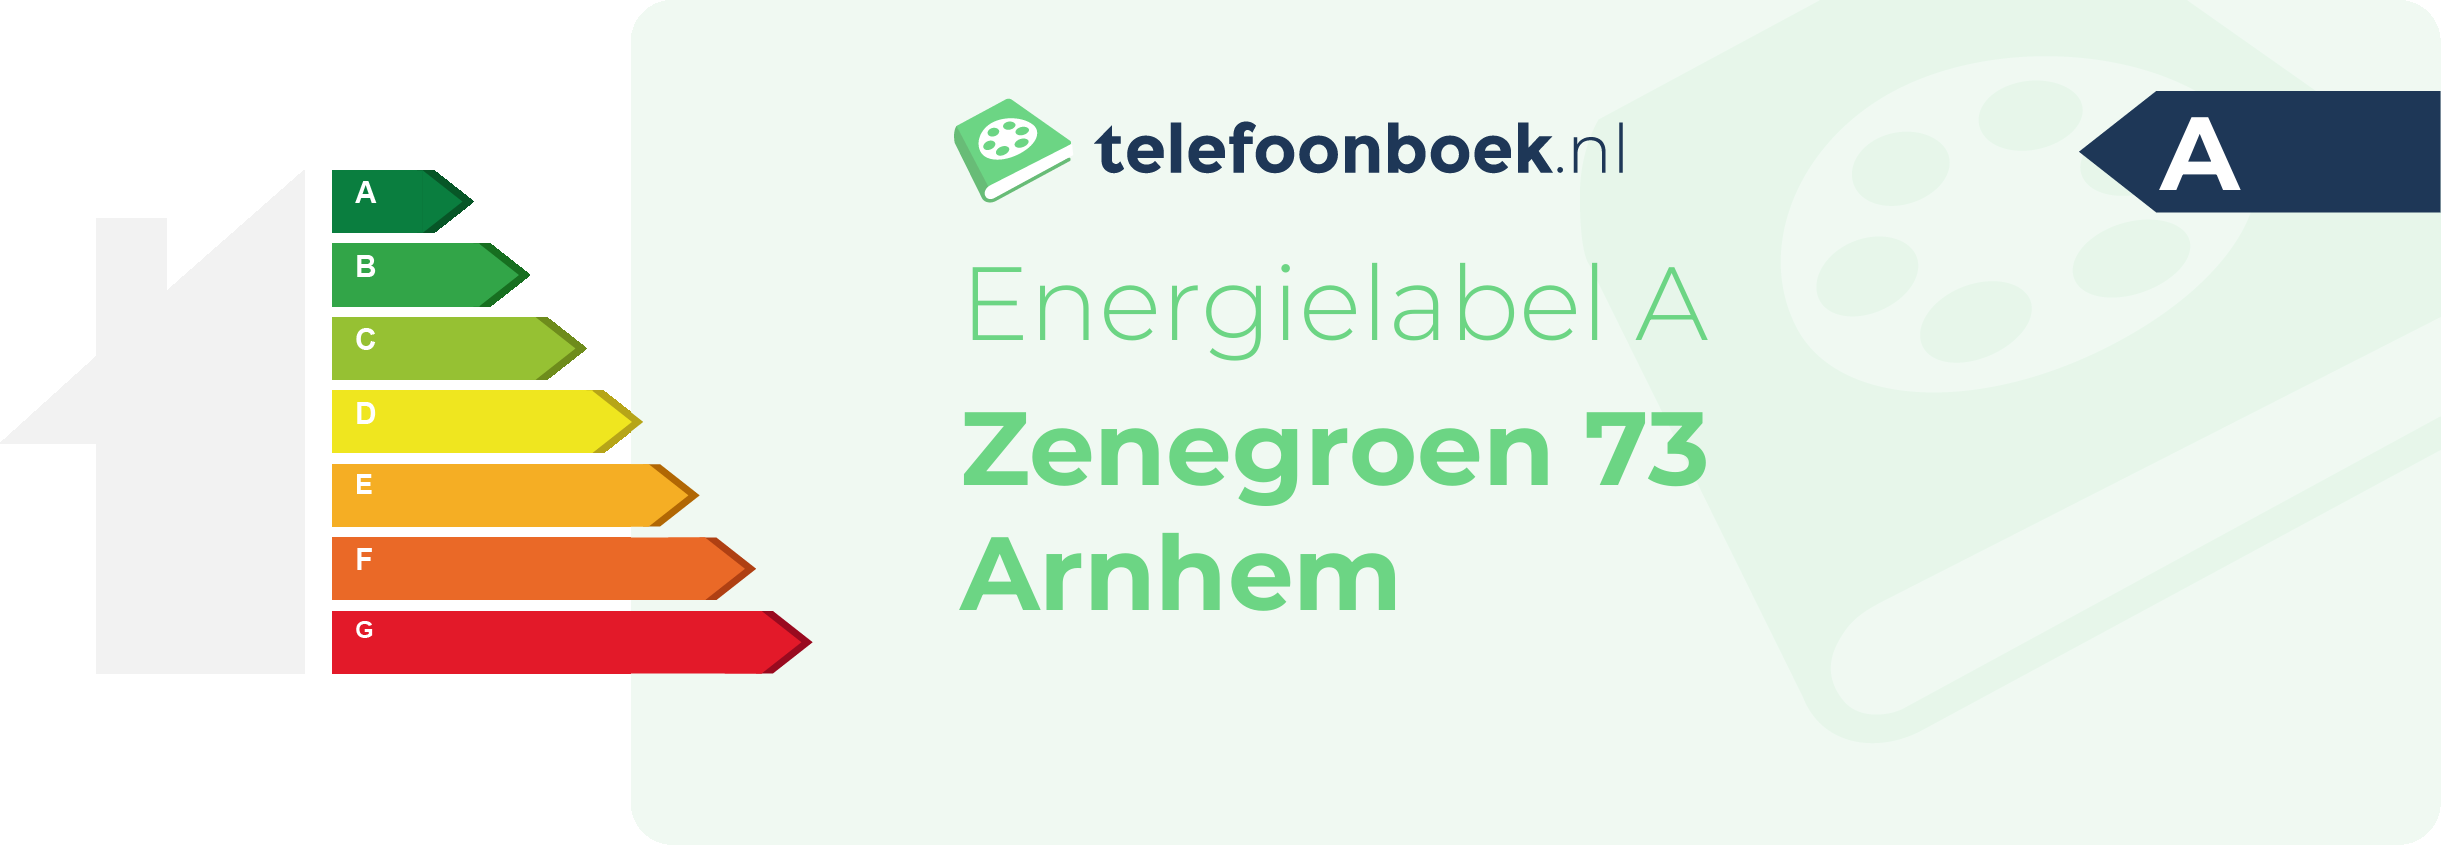 Energielabel Zenegroen 73 Arnhem